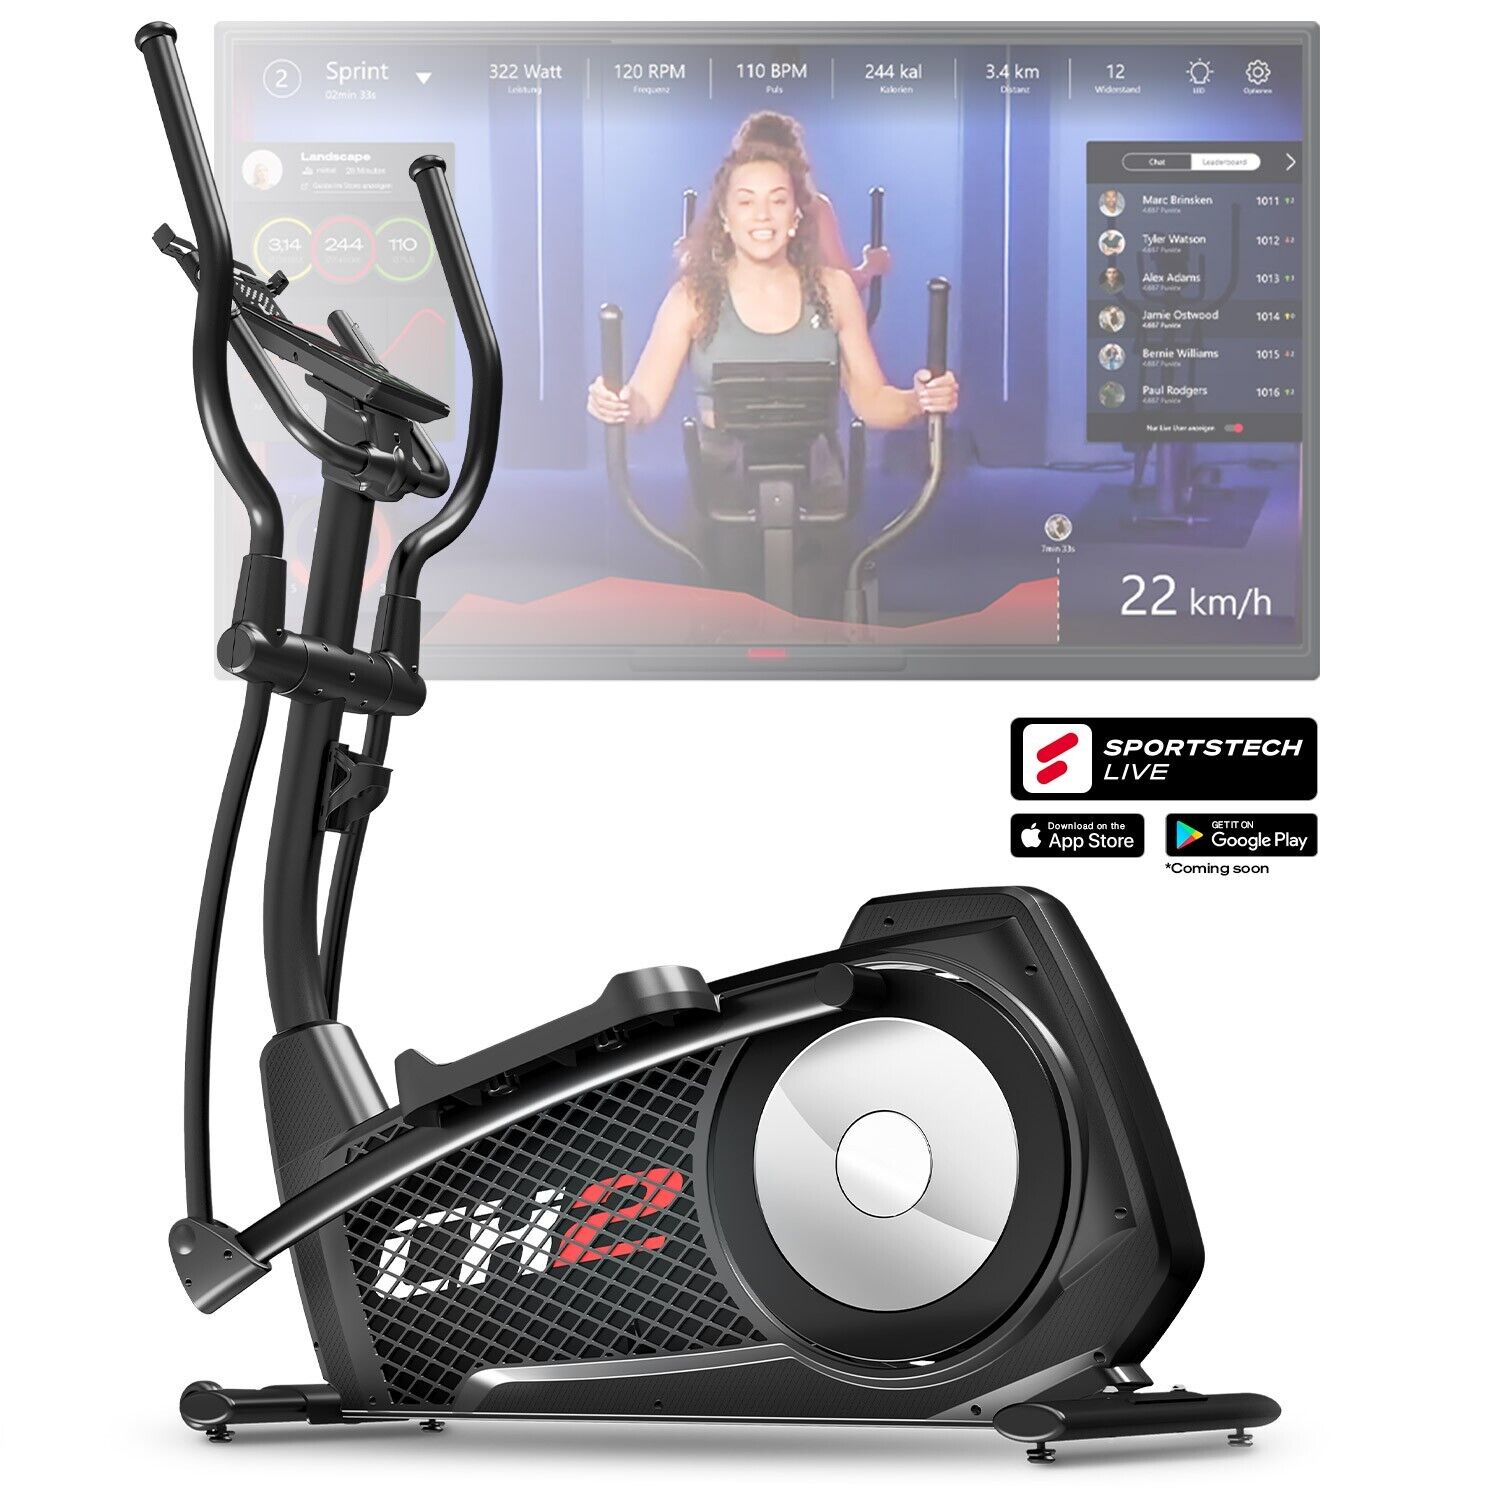 Sportstech CX2 Crosstrainer Smartphone App Schwarz online kaufen | eBay